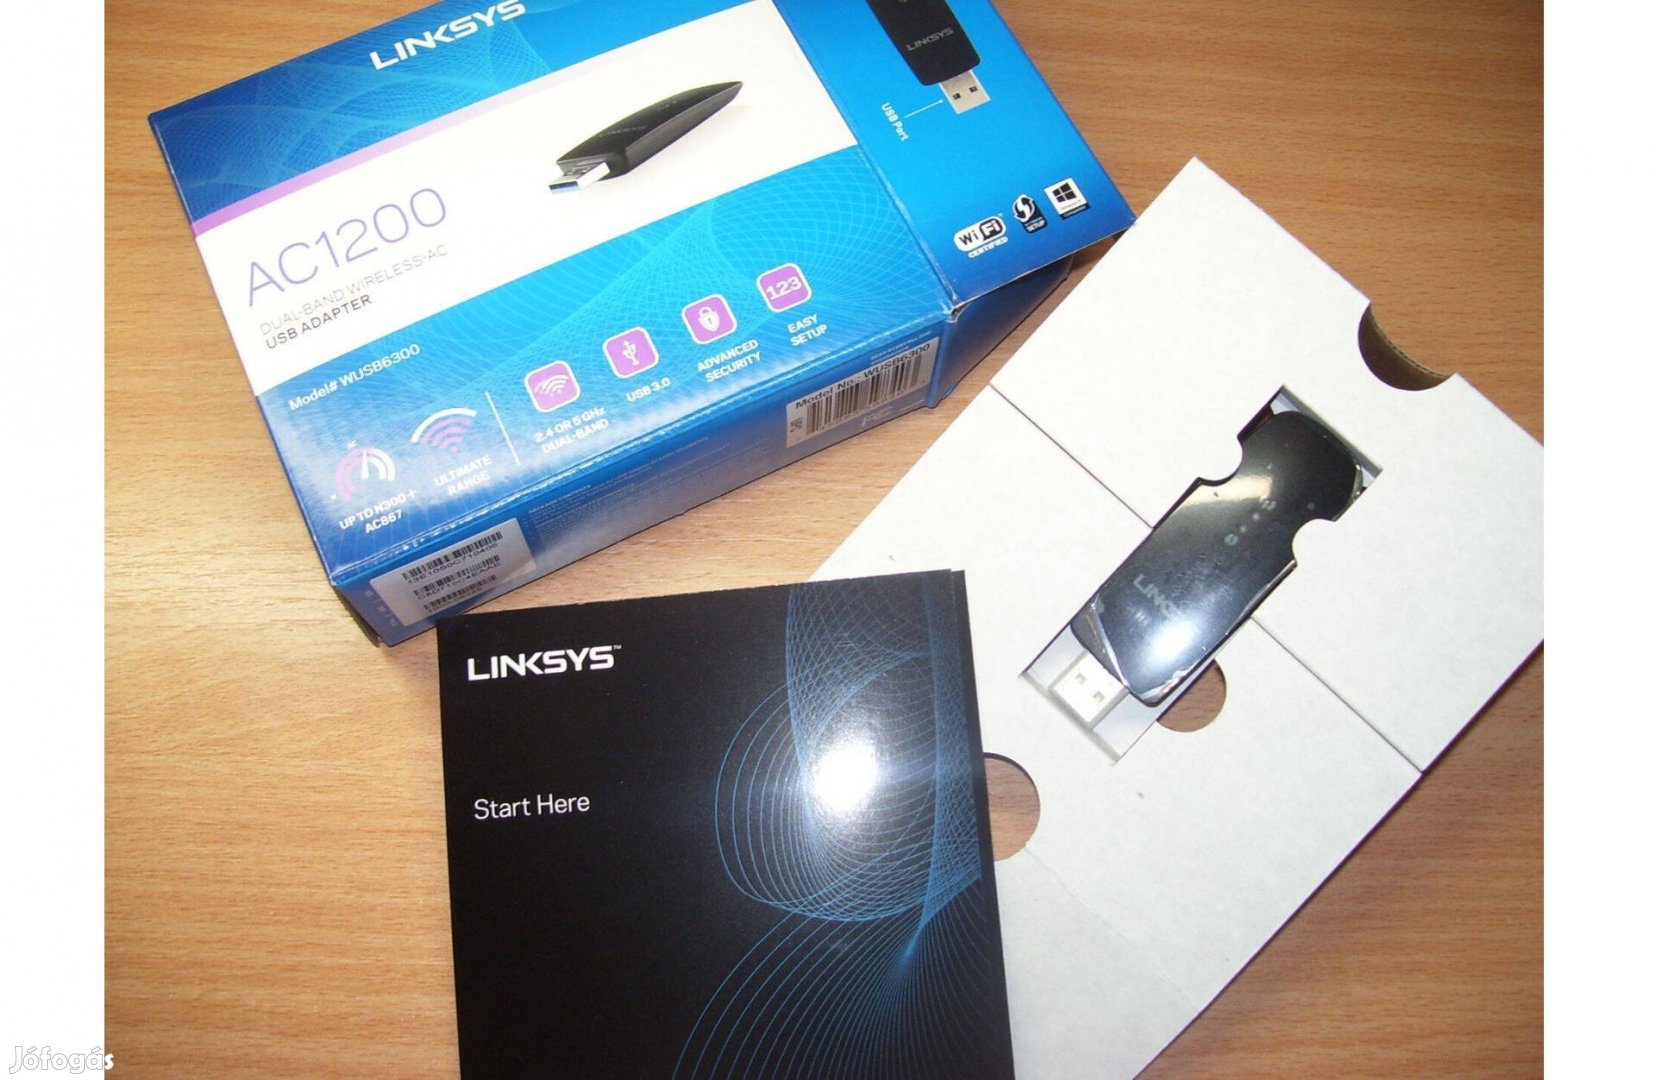 Számítógép PC - Linksys AC 1200 Dual Band wireless, USB 3.0 adapter